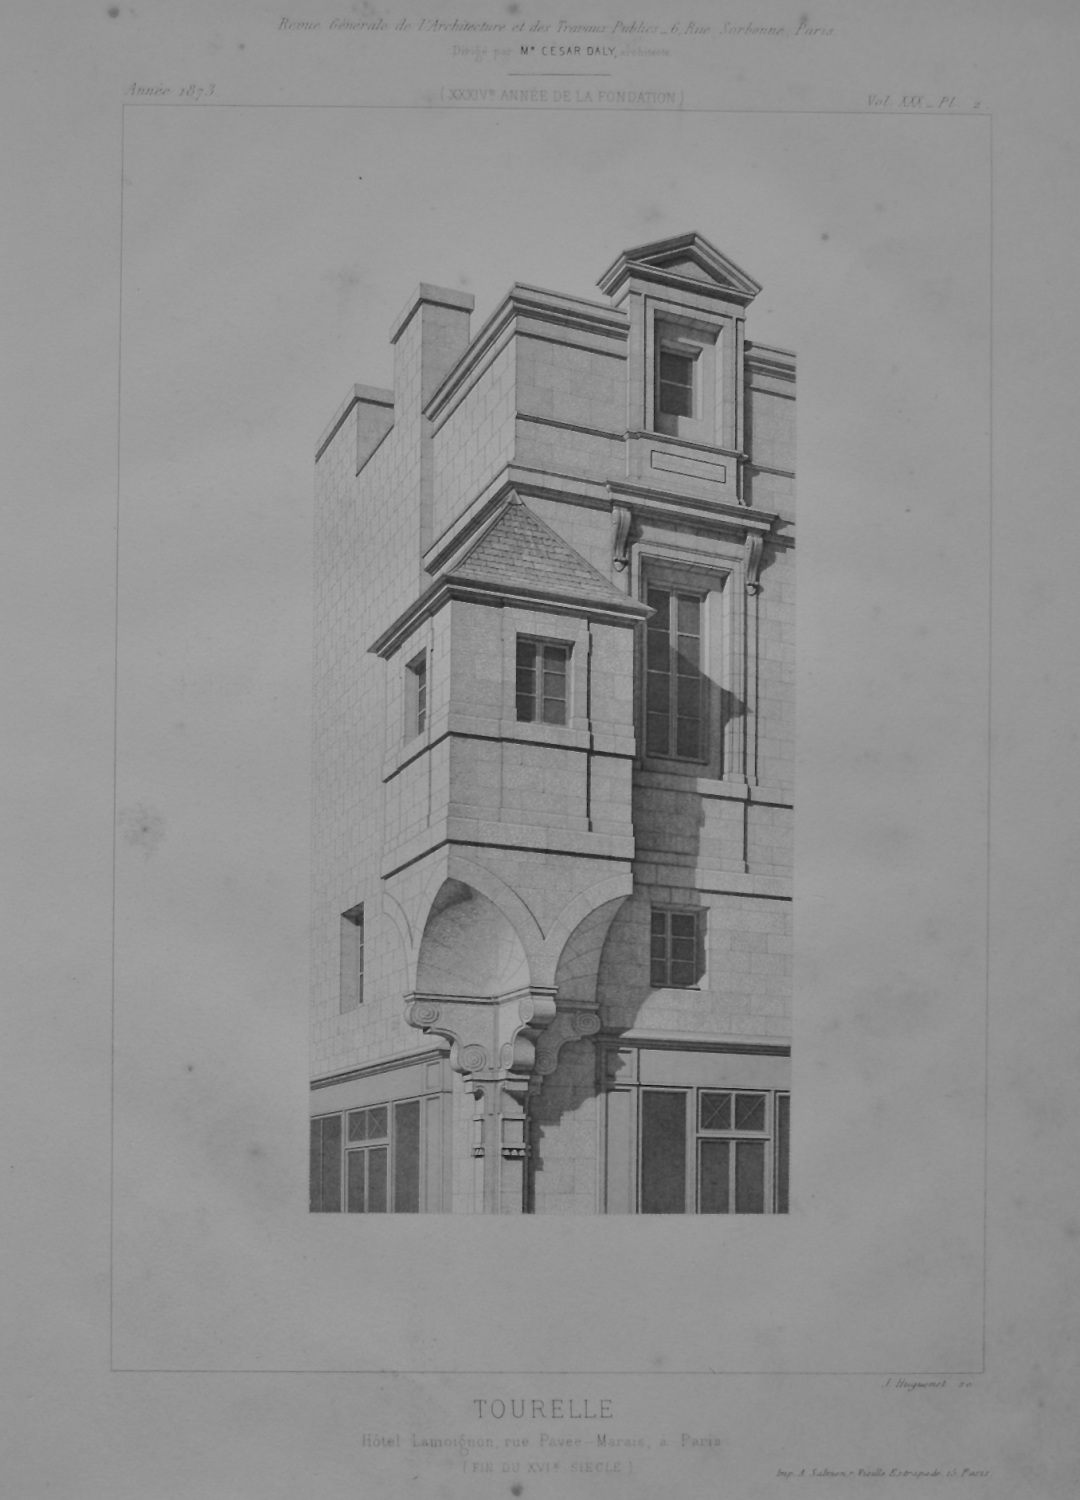 Tourelle, Hotel Lamoignon, rue Pavée - Marais, a Paris.  1873.